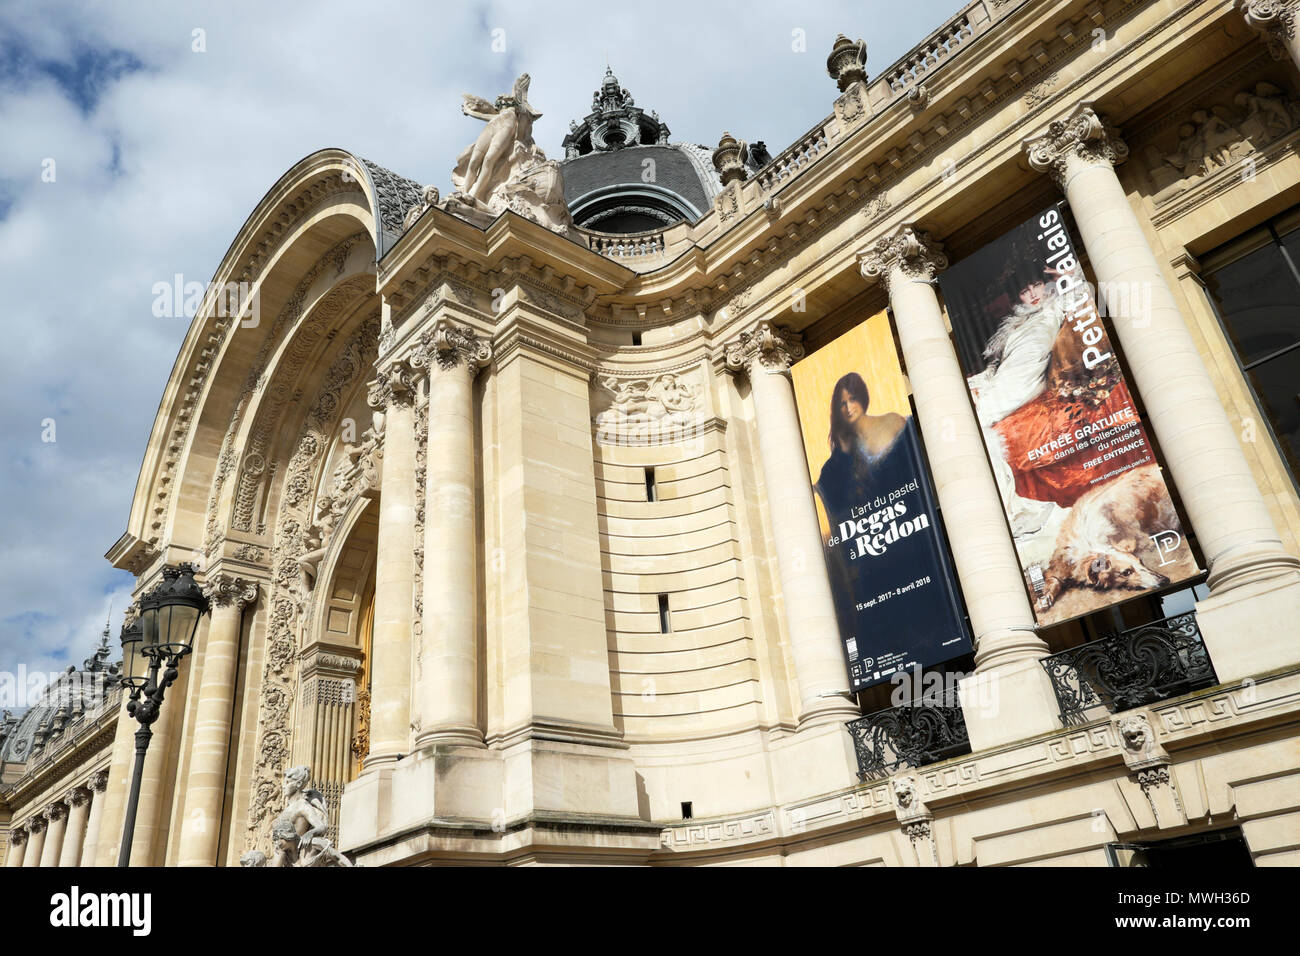 Außenansicht Eingang des Petit Palais Gebäude mit Degas bis Redon Ausstellung Plakat außerhalb an der vorderen Fassade in Paris Frankreich KATHY DEWITT Stockfoto